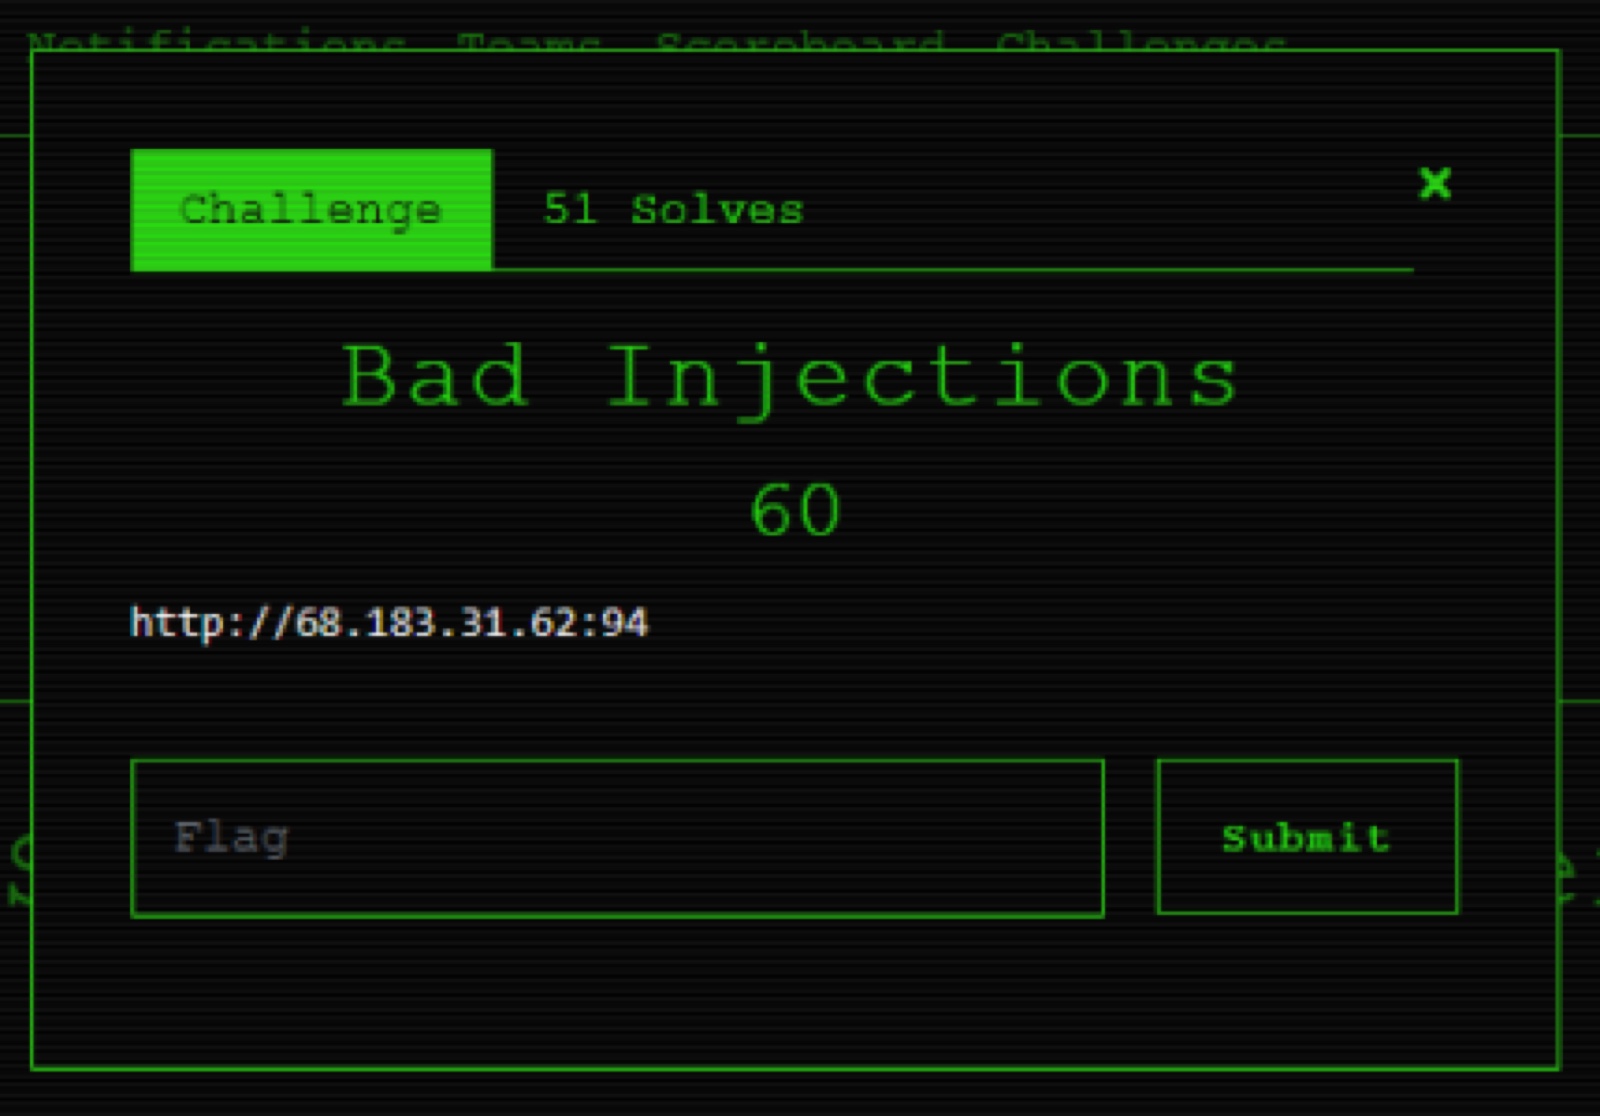 Challenge: Bad injections